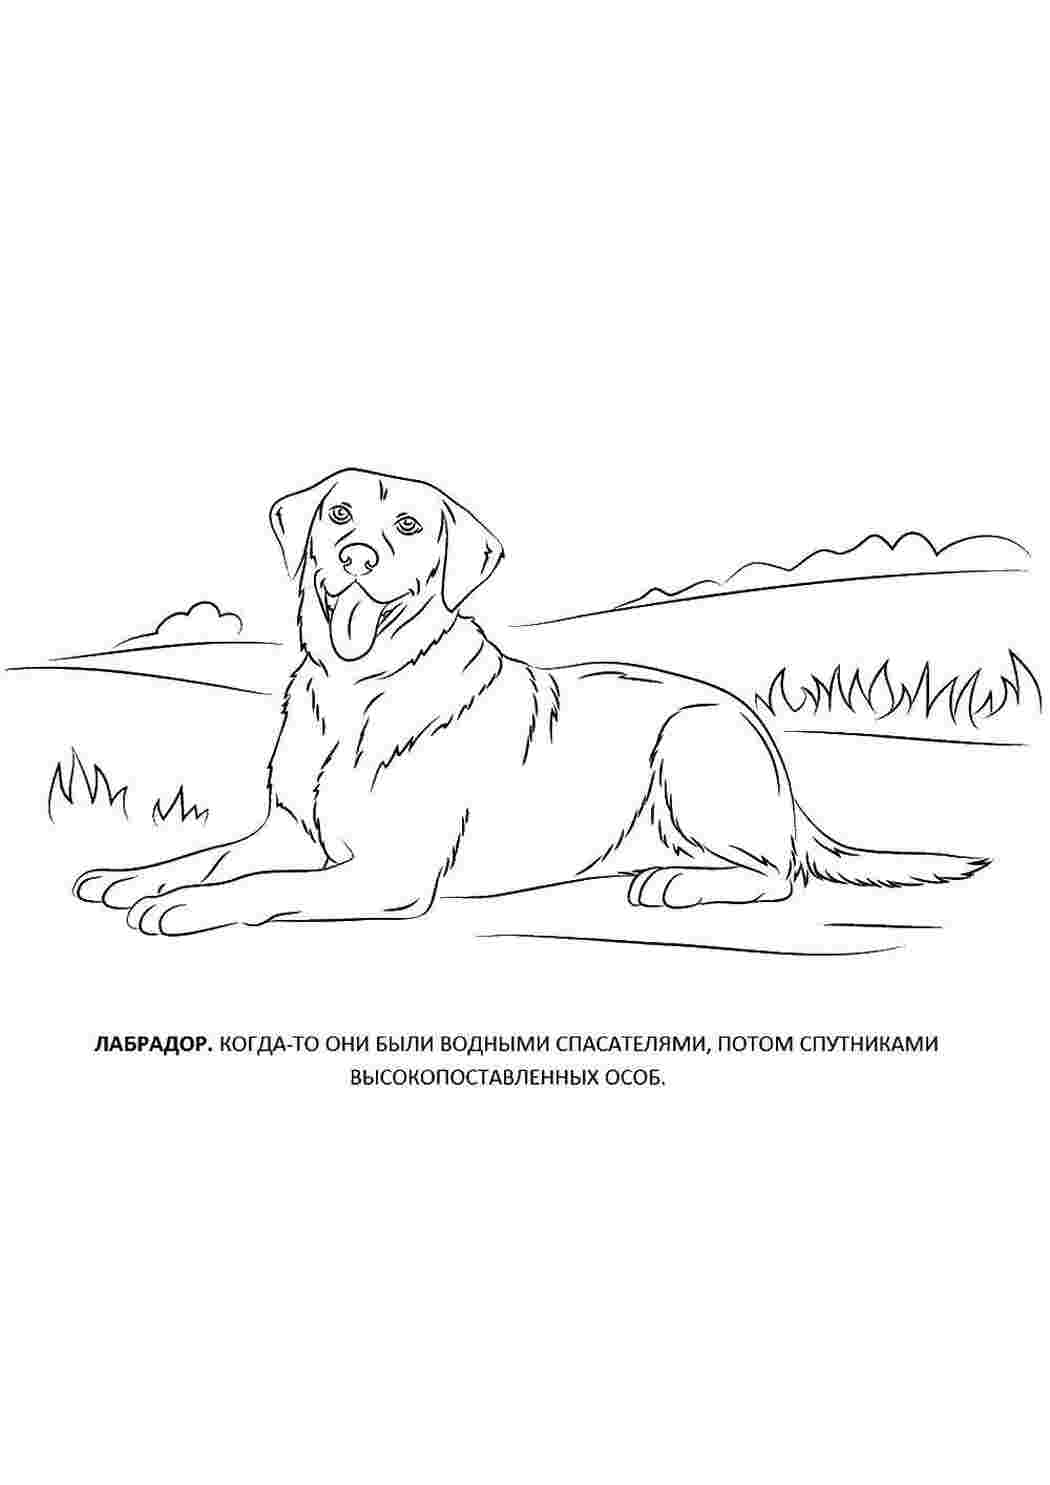 Лабрадор ретривер собака раскраски страницу иллюстрация